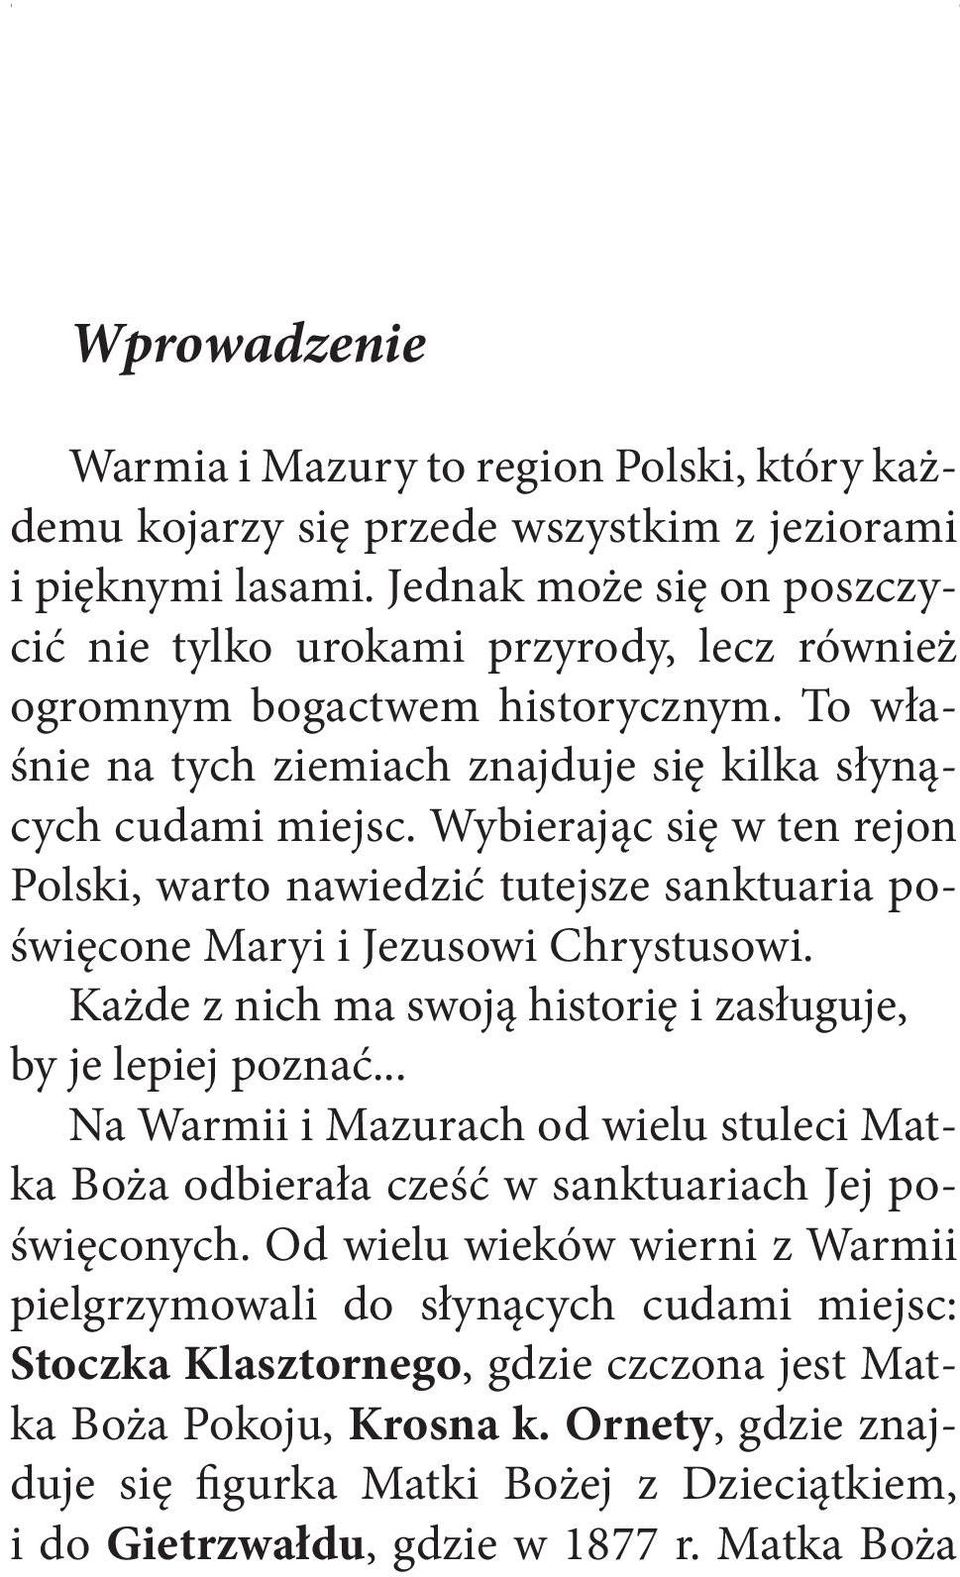 Wybierając się w ten rejon Polski, warto nawiedzić tutejsze sanktuaria poświęcone Maryi i Jezusowi Chrystusowi. Każde z nich ma swoją historię i zasługuje, by je lepiej poznać.